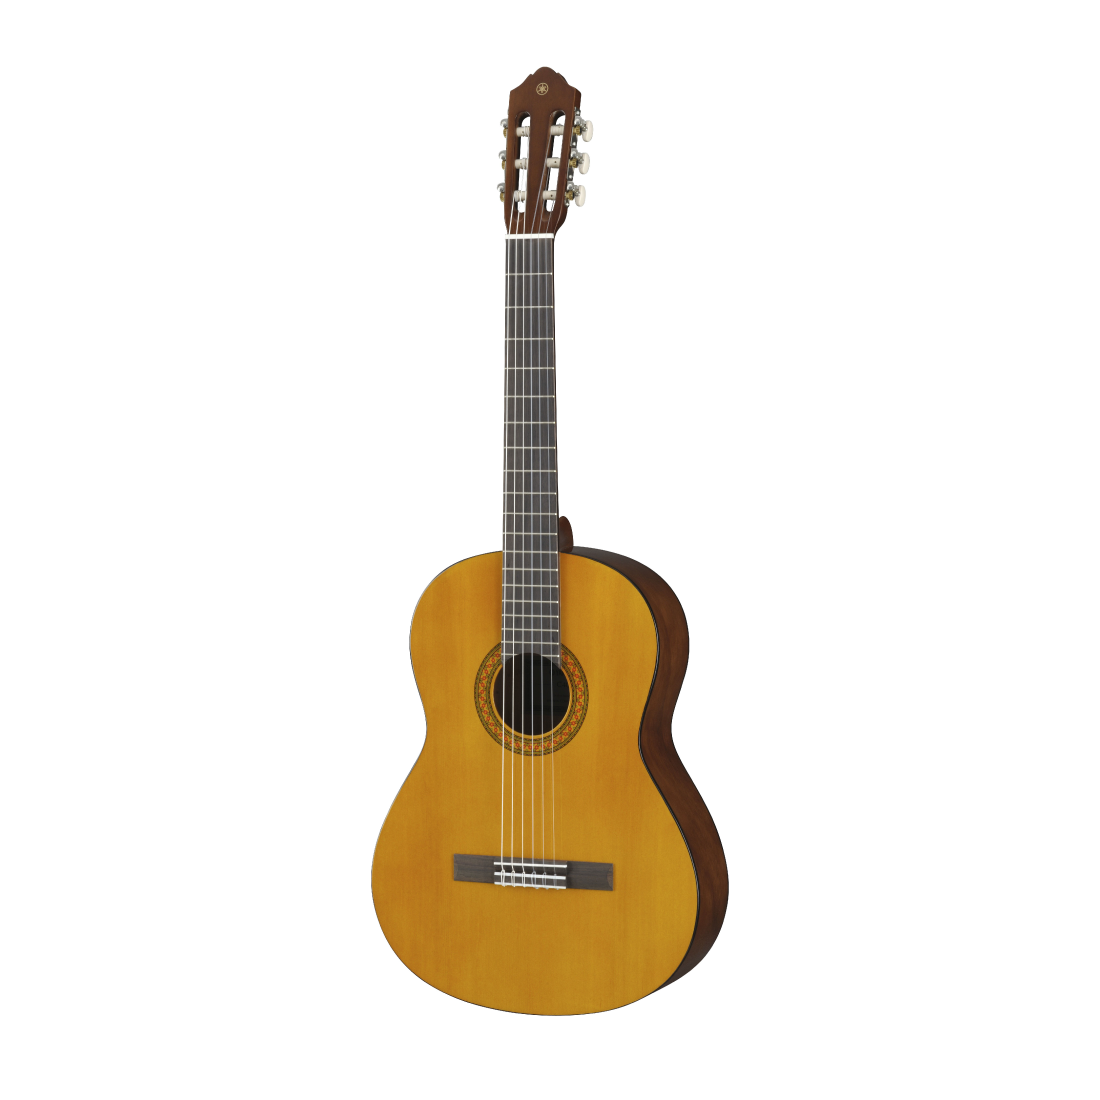 Đàn Guitar Classic, Classical & Nylon - Yamaha C40II (C40 version 2) - Natural, model phù hợp cho người mới bắt đầu - Hàng chính hãng